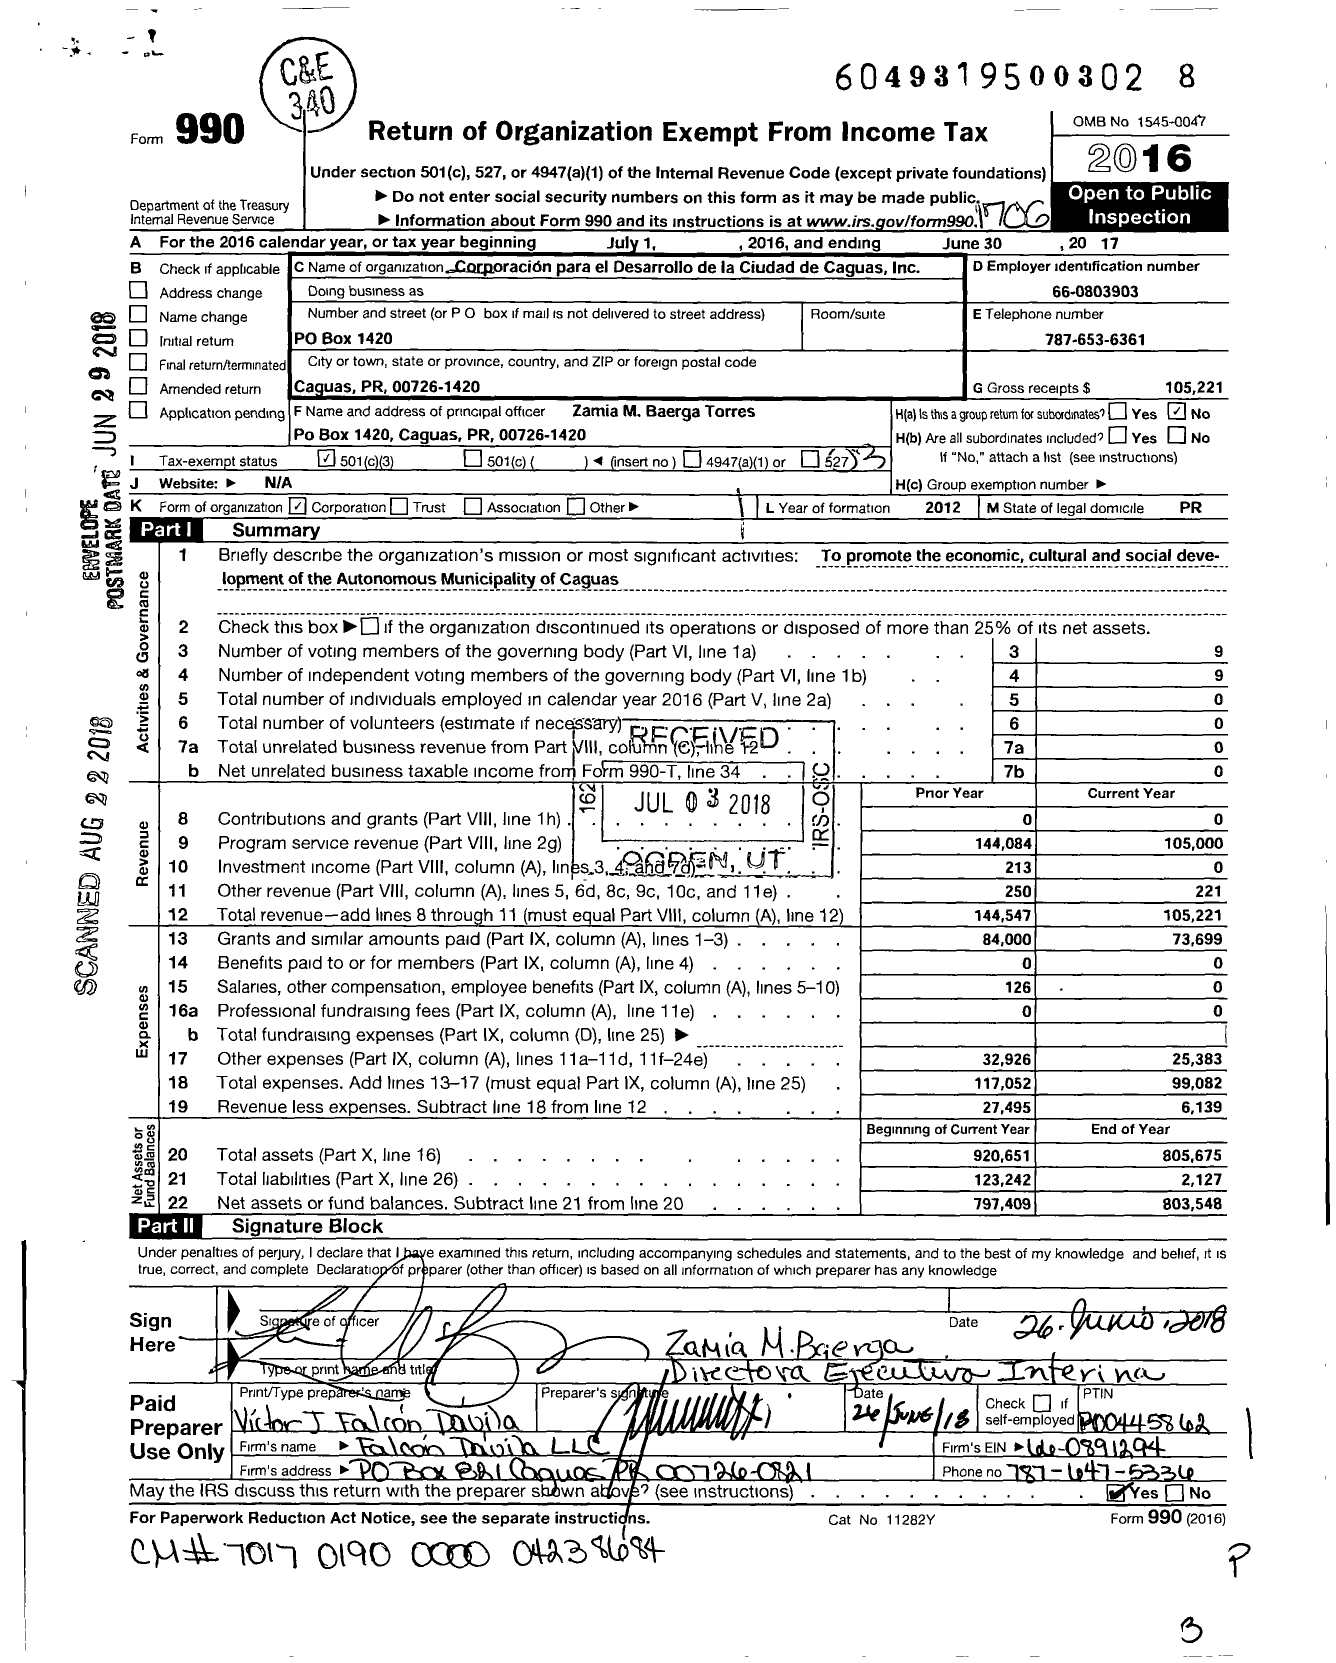 Image of first page of 2016 Form 990 for Corporacion Para El Desarrollo de La Ciudad de Caguas